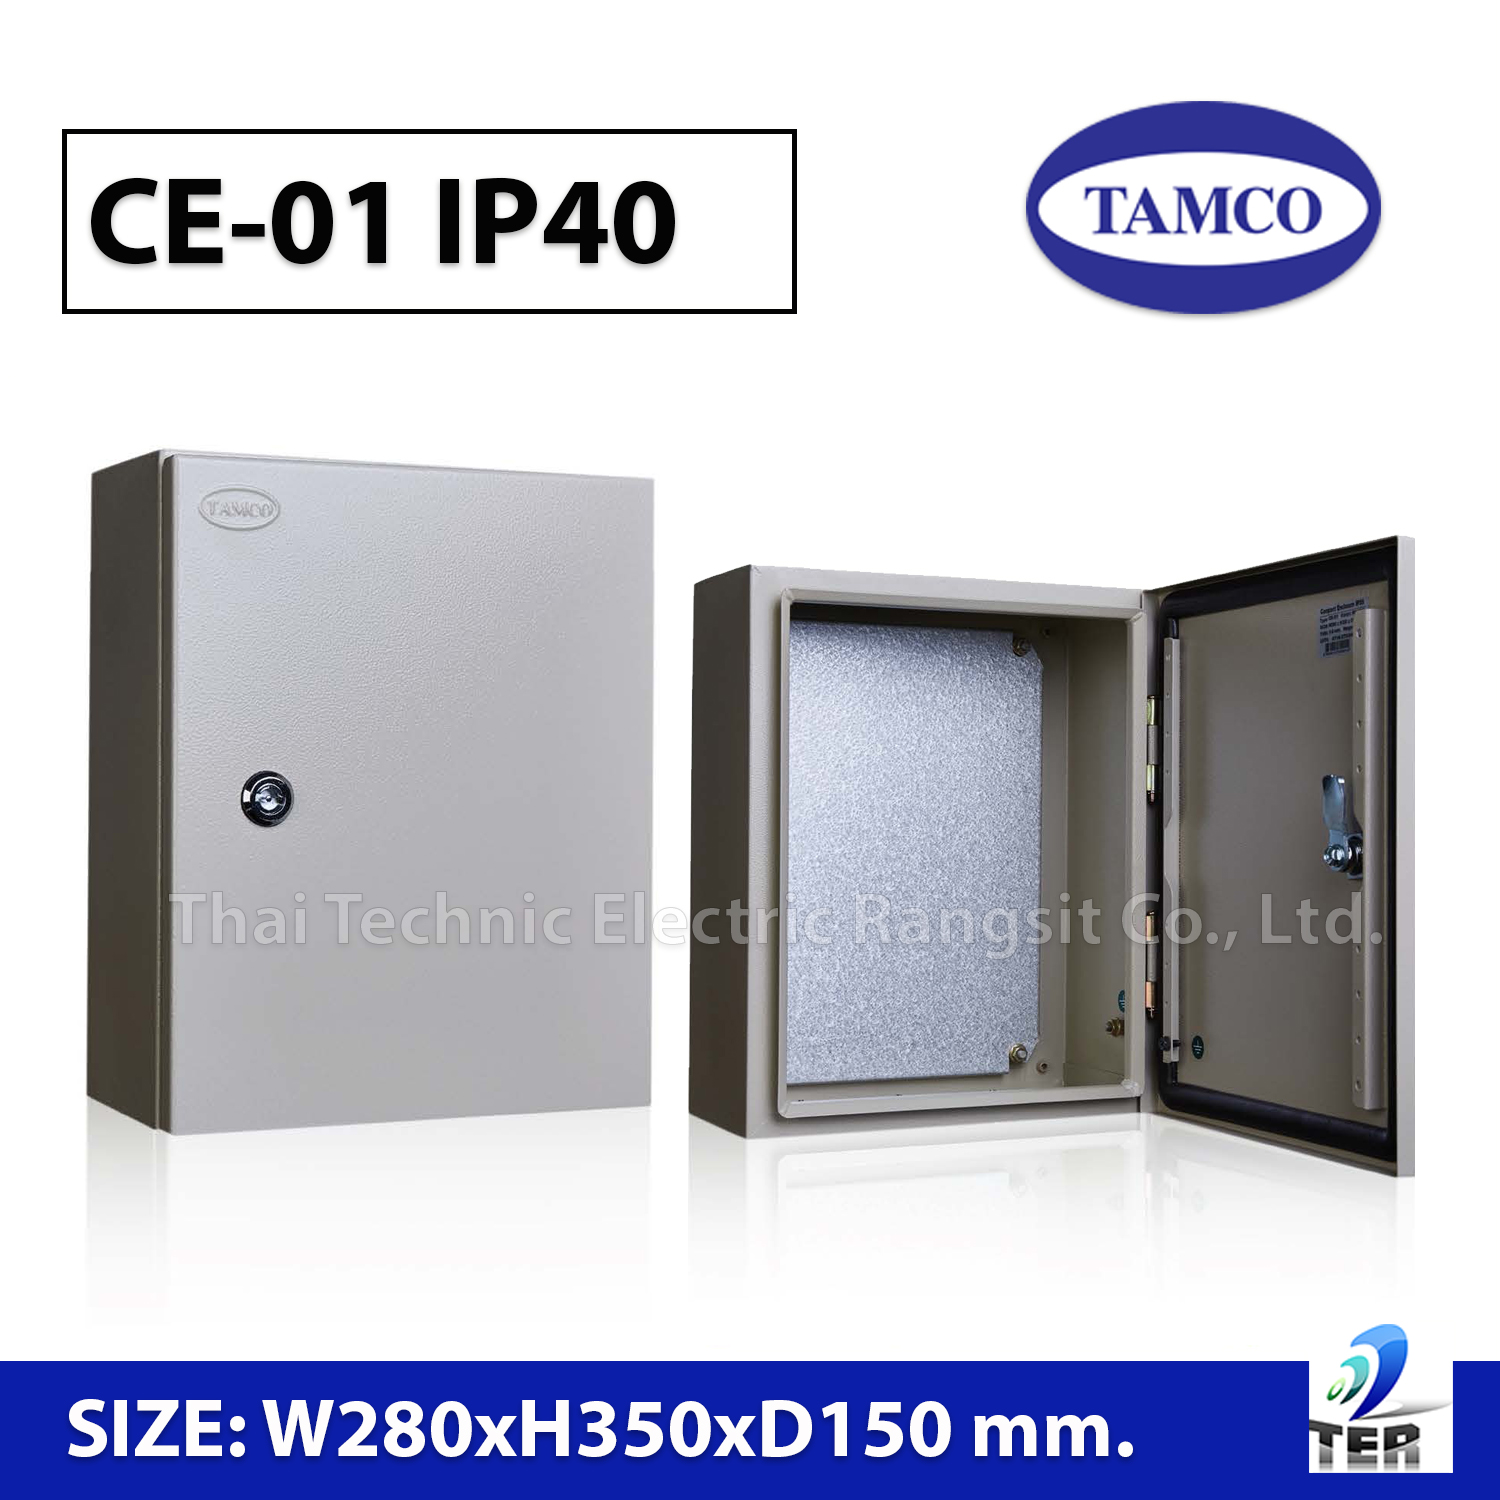 ตู้สวิชบอร์ดกันฝุ่น ตู้ควบคุมไฟฟ้า ตู้เหล็ก กล่องเหล็ก รุ่น CE-01 IP40 Size: W280 x H350 x D150 mm. TAMCO พร้อมส่ง สามารถออกใบกำกับภาษีได้